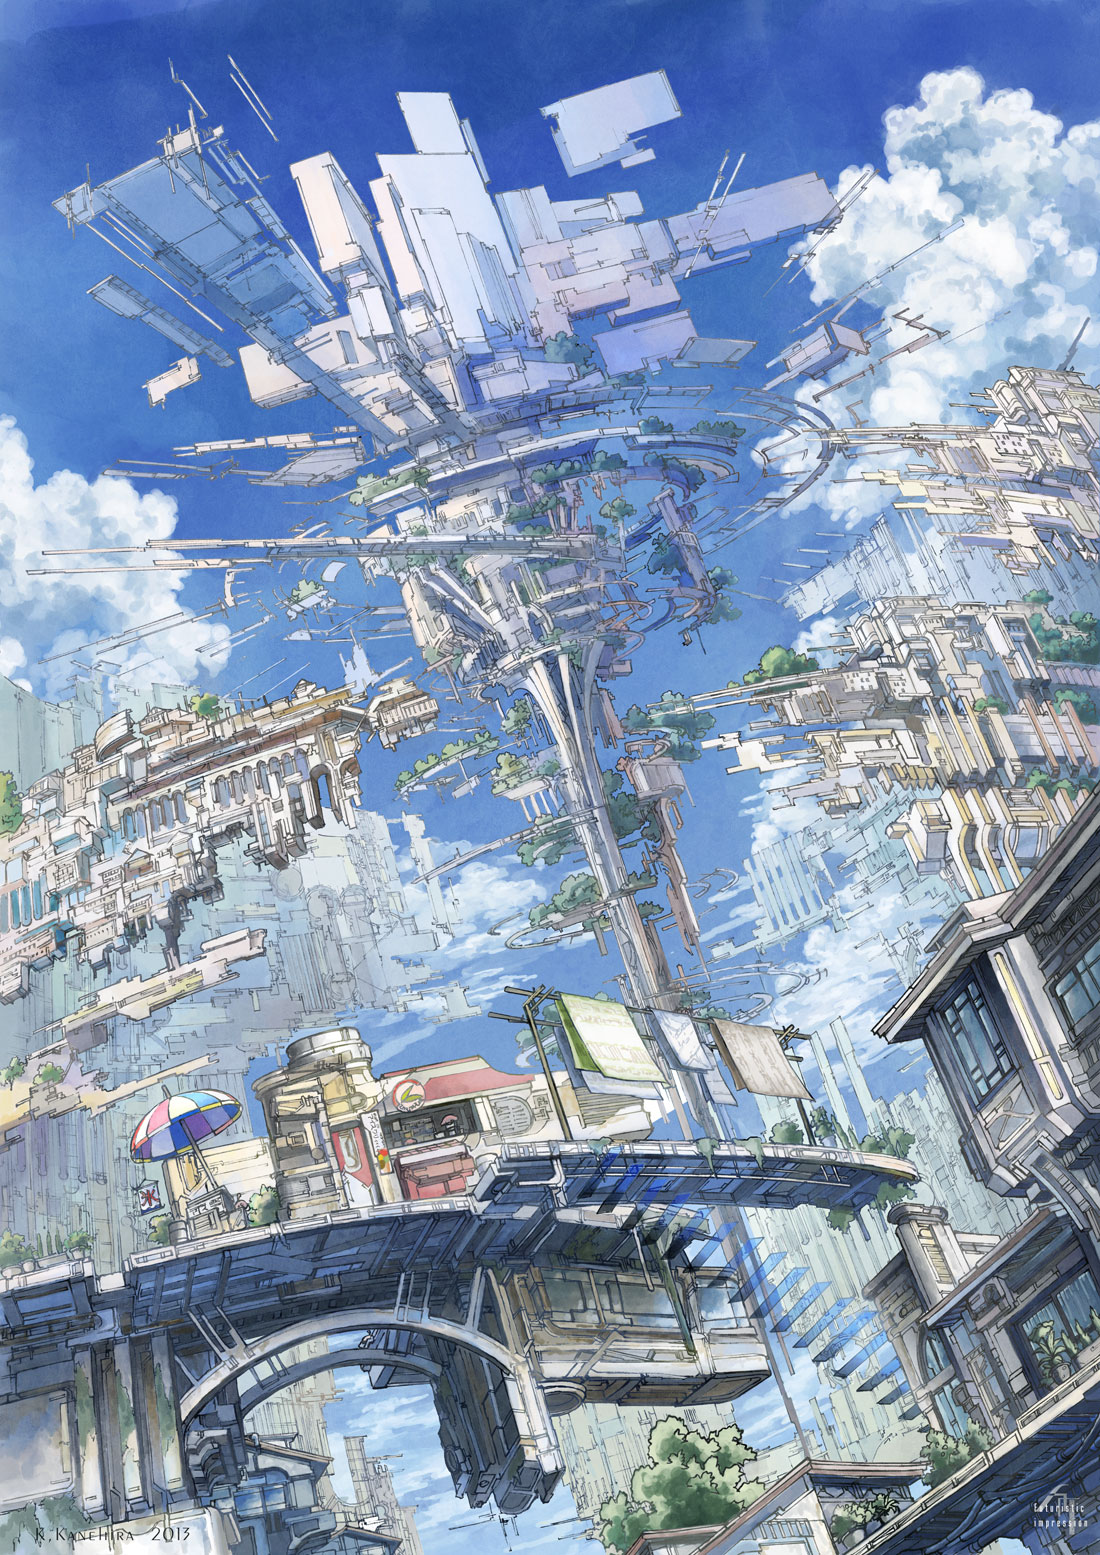 3 二次風景画像 14枚 ファンタジー 近未来 空中都市 飛行船 イラスト 壁紙 風景と少女による可能世界